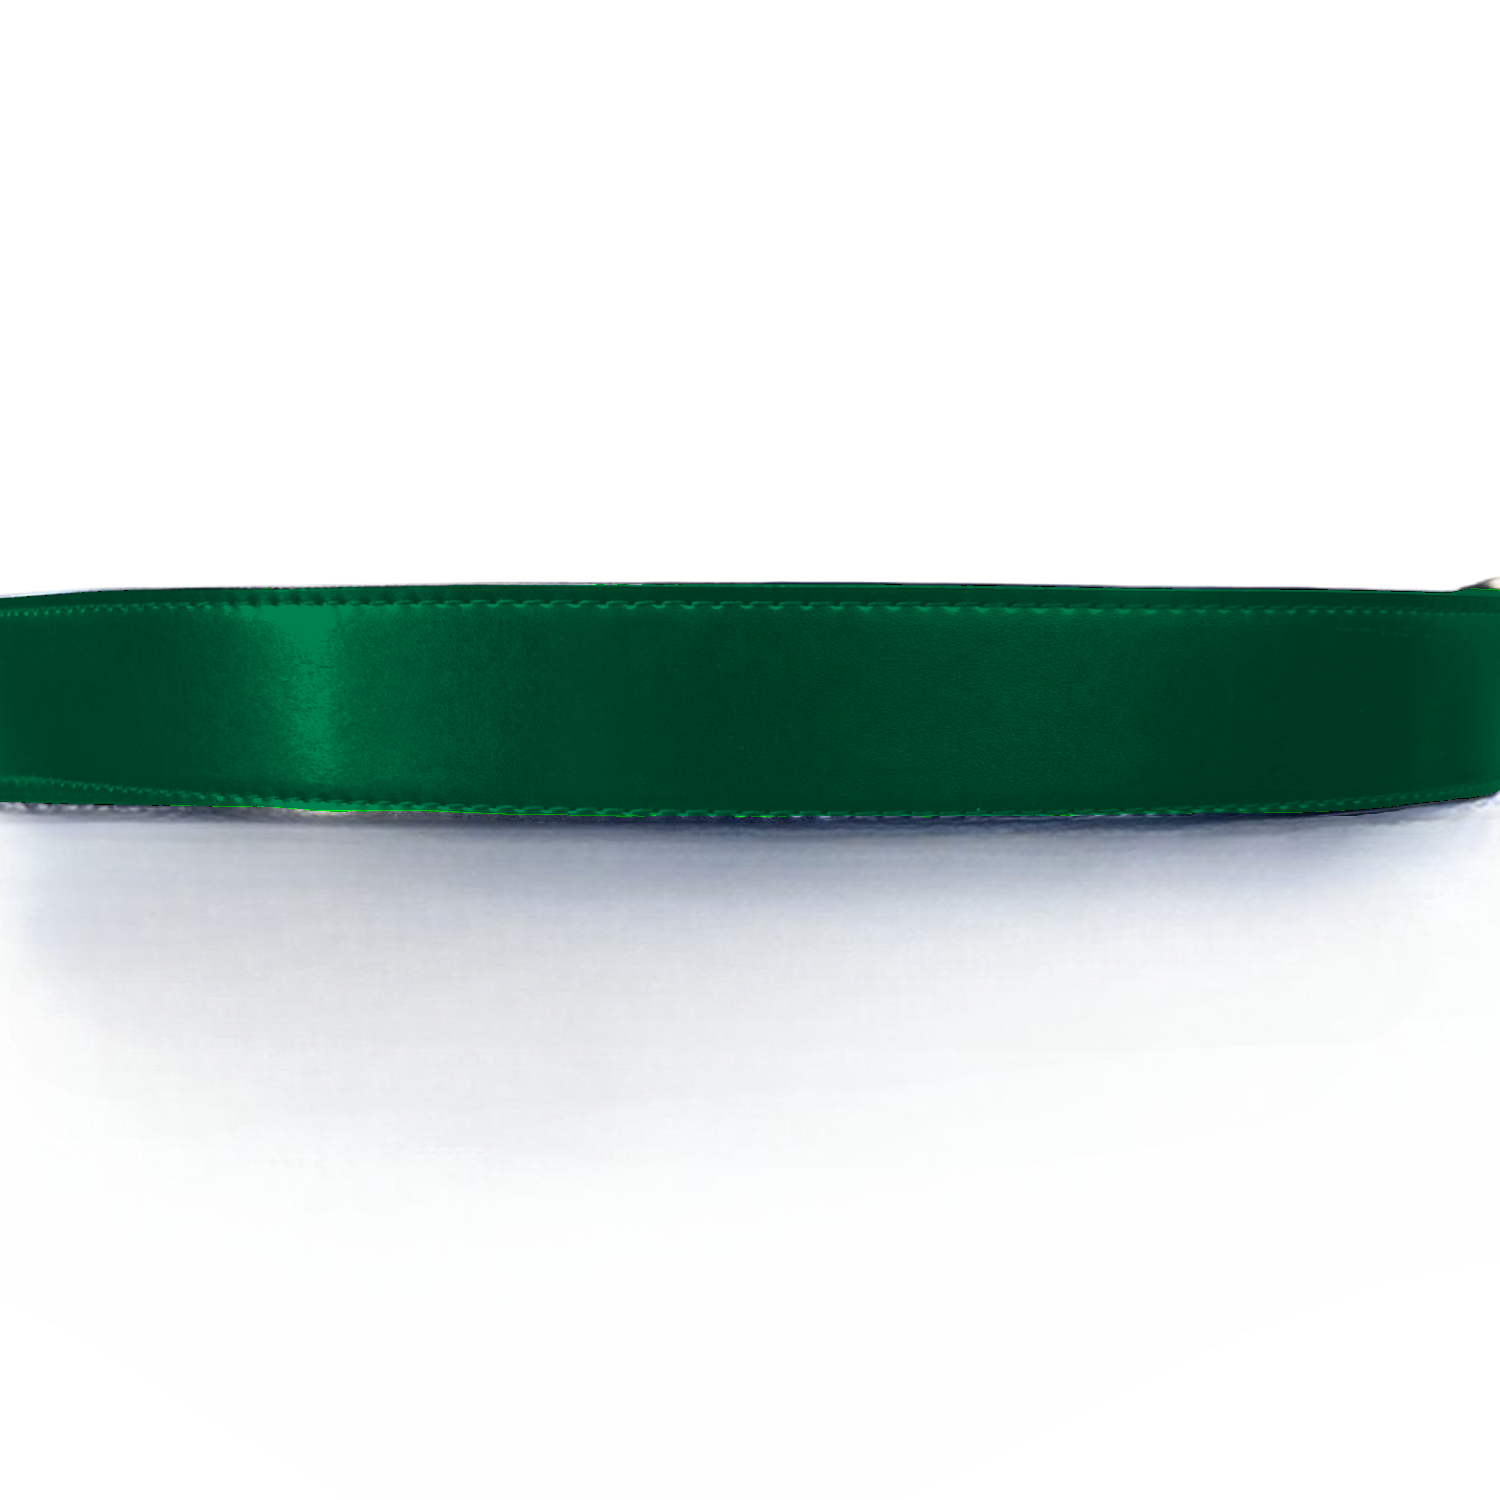 Standard Green Baller Leather Belt